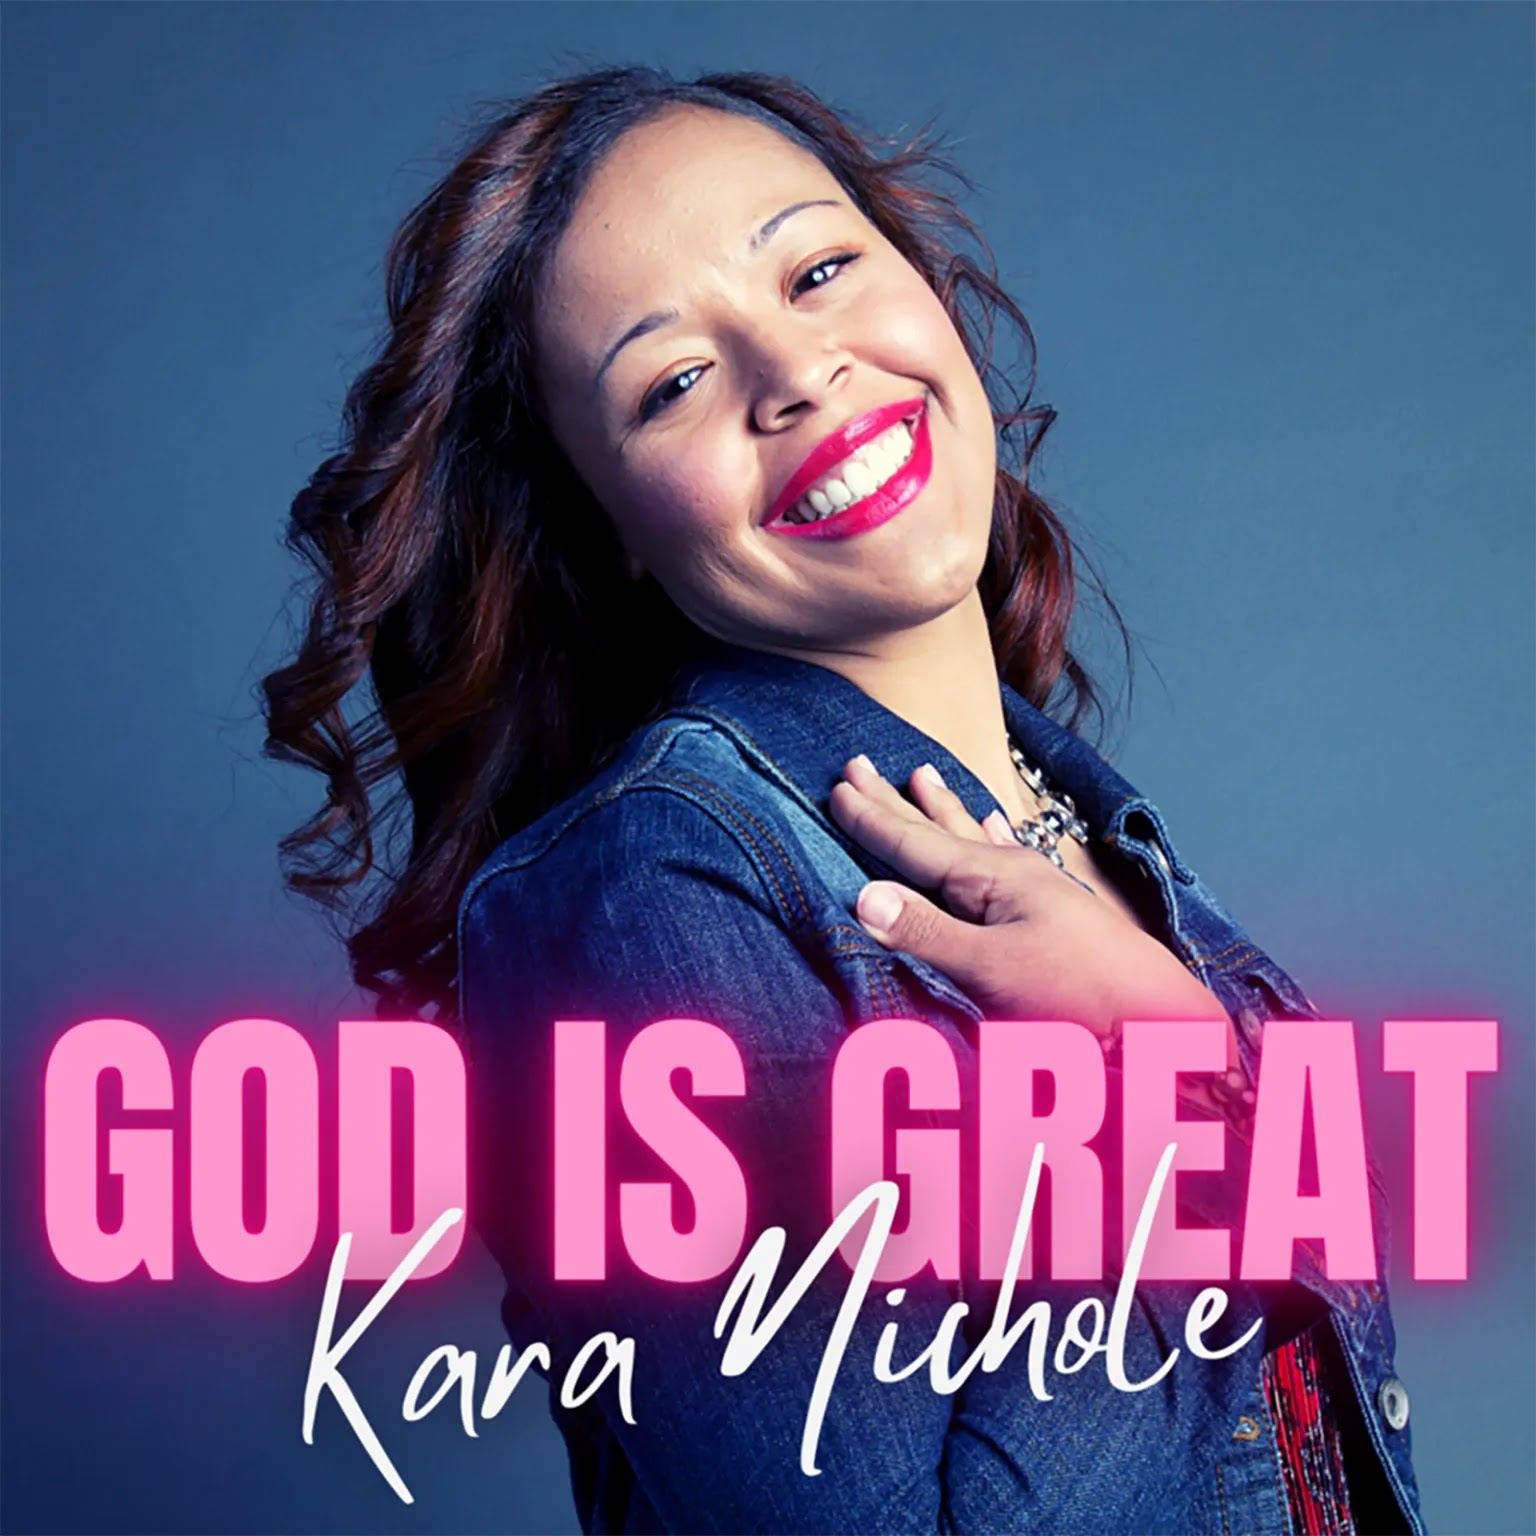 Ca sĩ Kara Nichole vừa cho ra mắt đĩa đơn GOD IS GREAT, với âm nhạc sôi động và thông điệp tích cực. Video ra mắt đã mang đến cho khán giả một trải nghiệm âm nhạc đầy cảm xúc, thật đáng để xem qua.